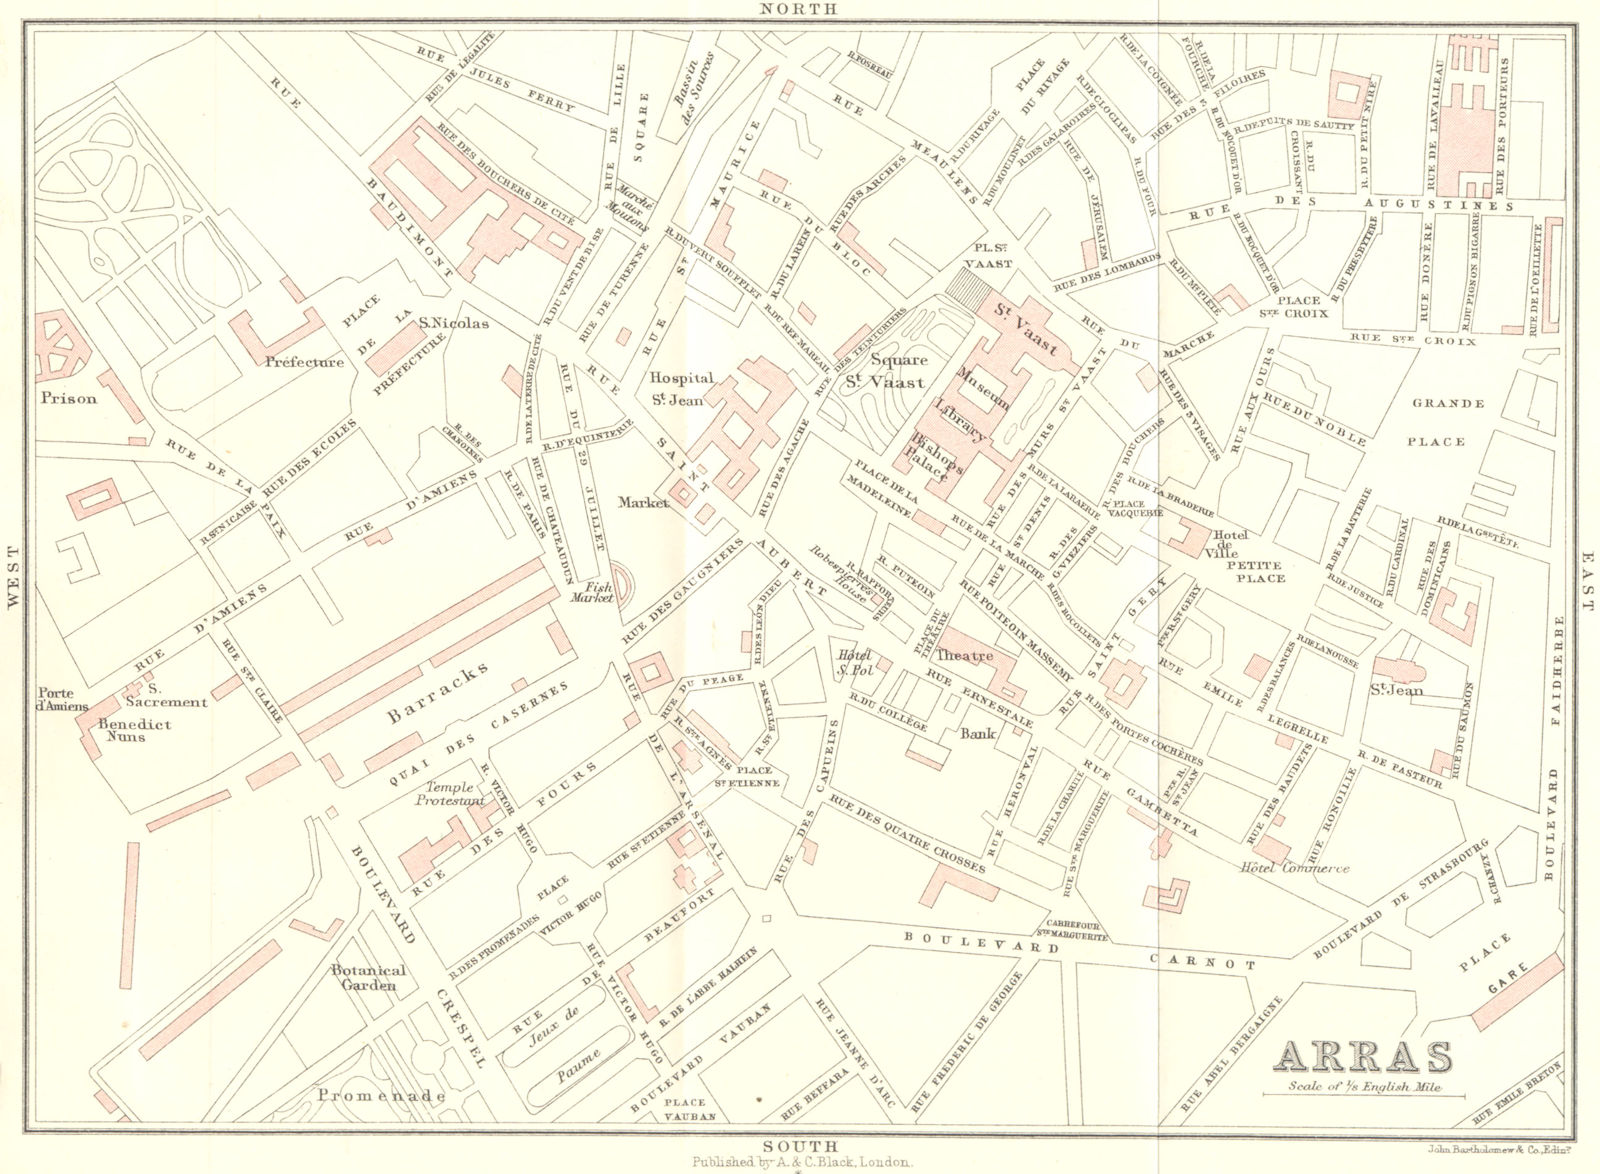 PAS-DE-CALAIS. Dunkerque to Paris. Arras 1913 old antique map plan chart